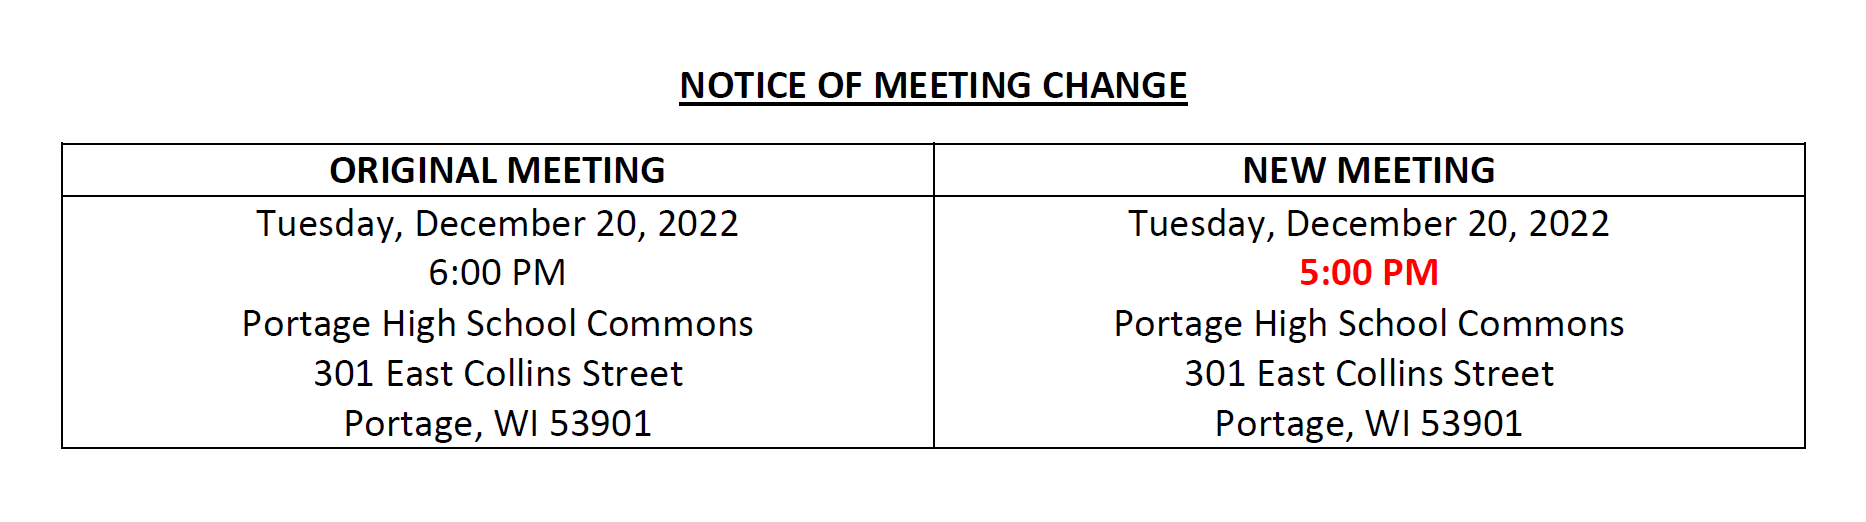 Notice of Meeting Change